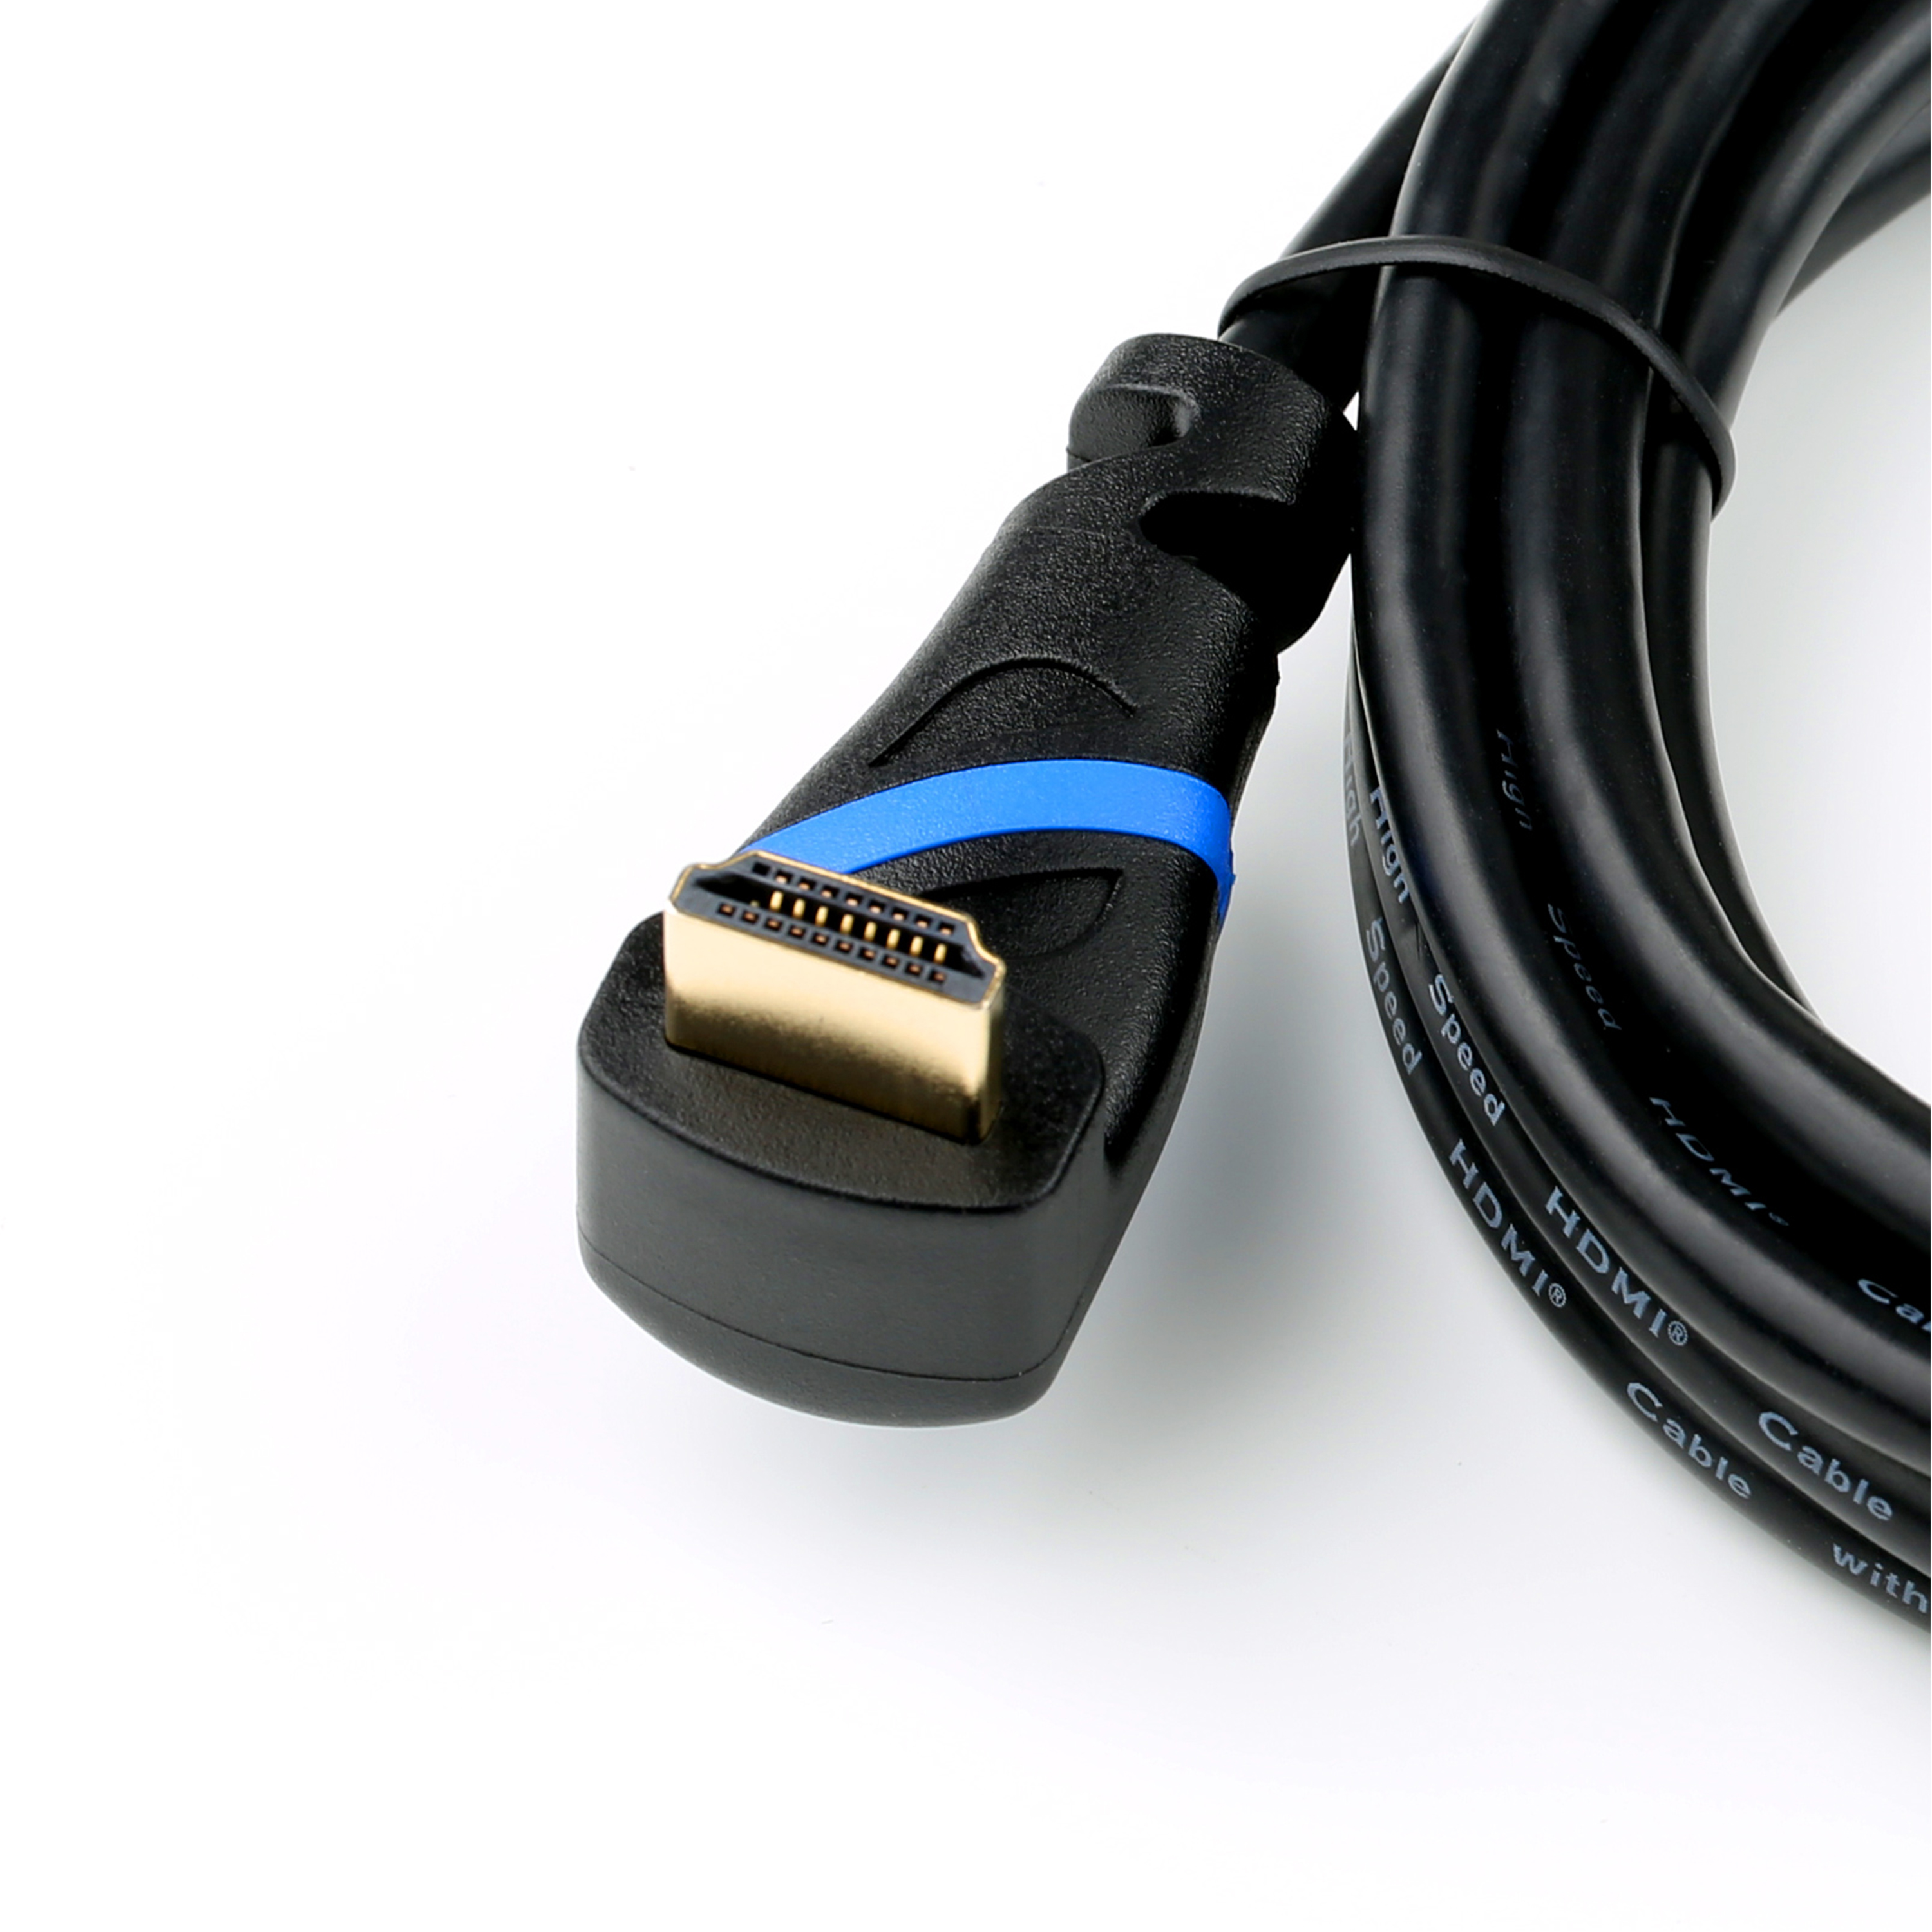 HDMI 3 CSL gewinkelt, Kabel, 2.0 HDMI Kabel, m schwarz/blau